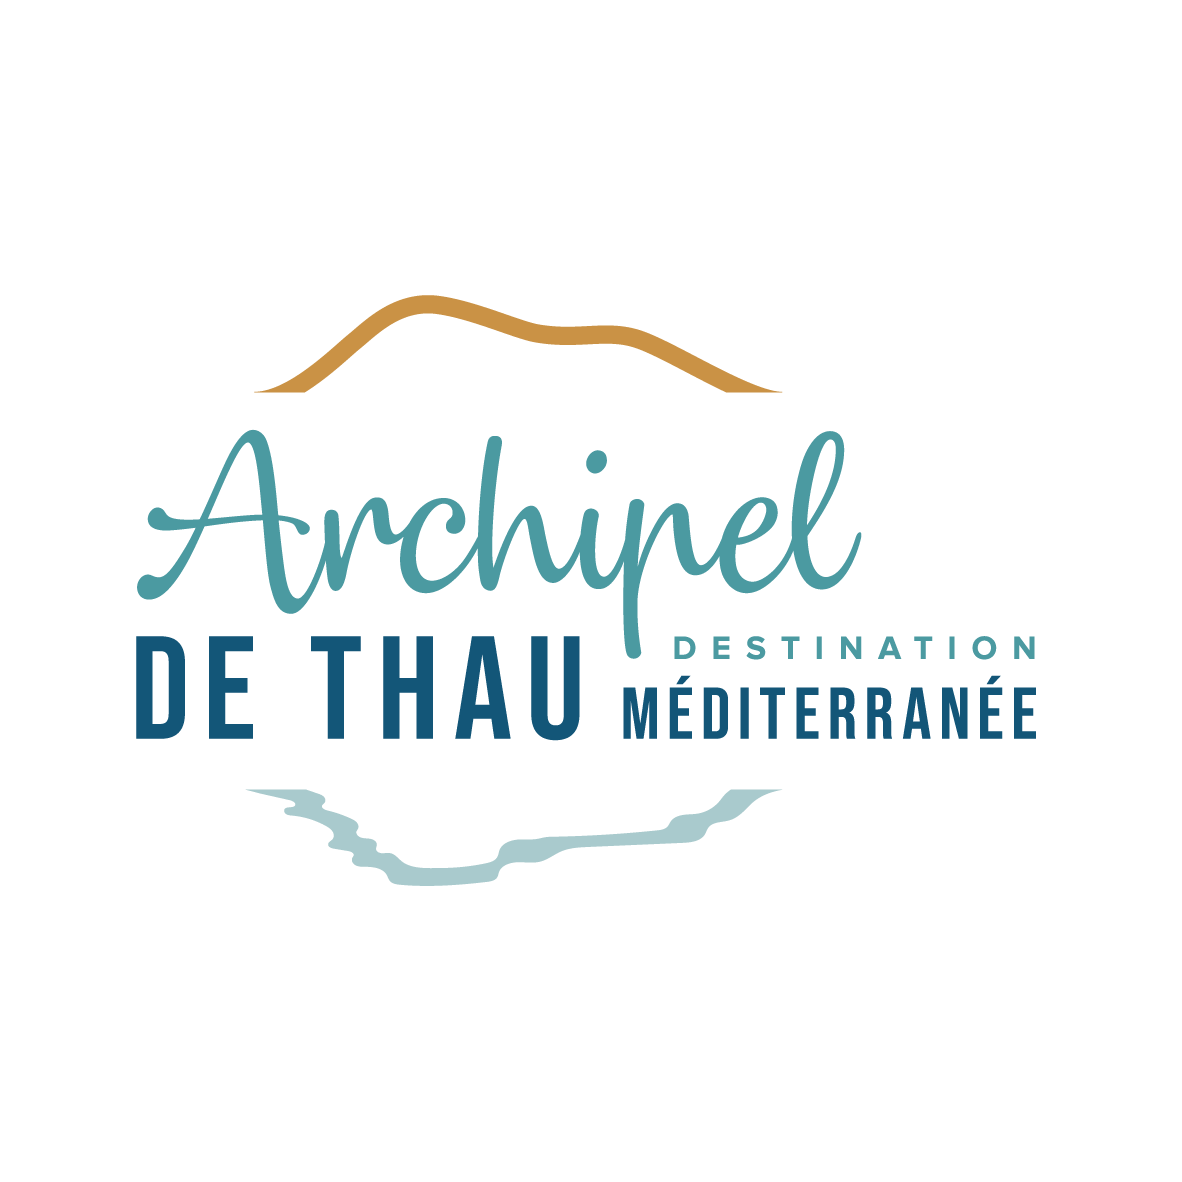 logo archipel